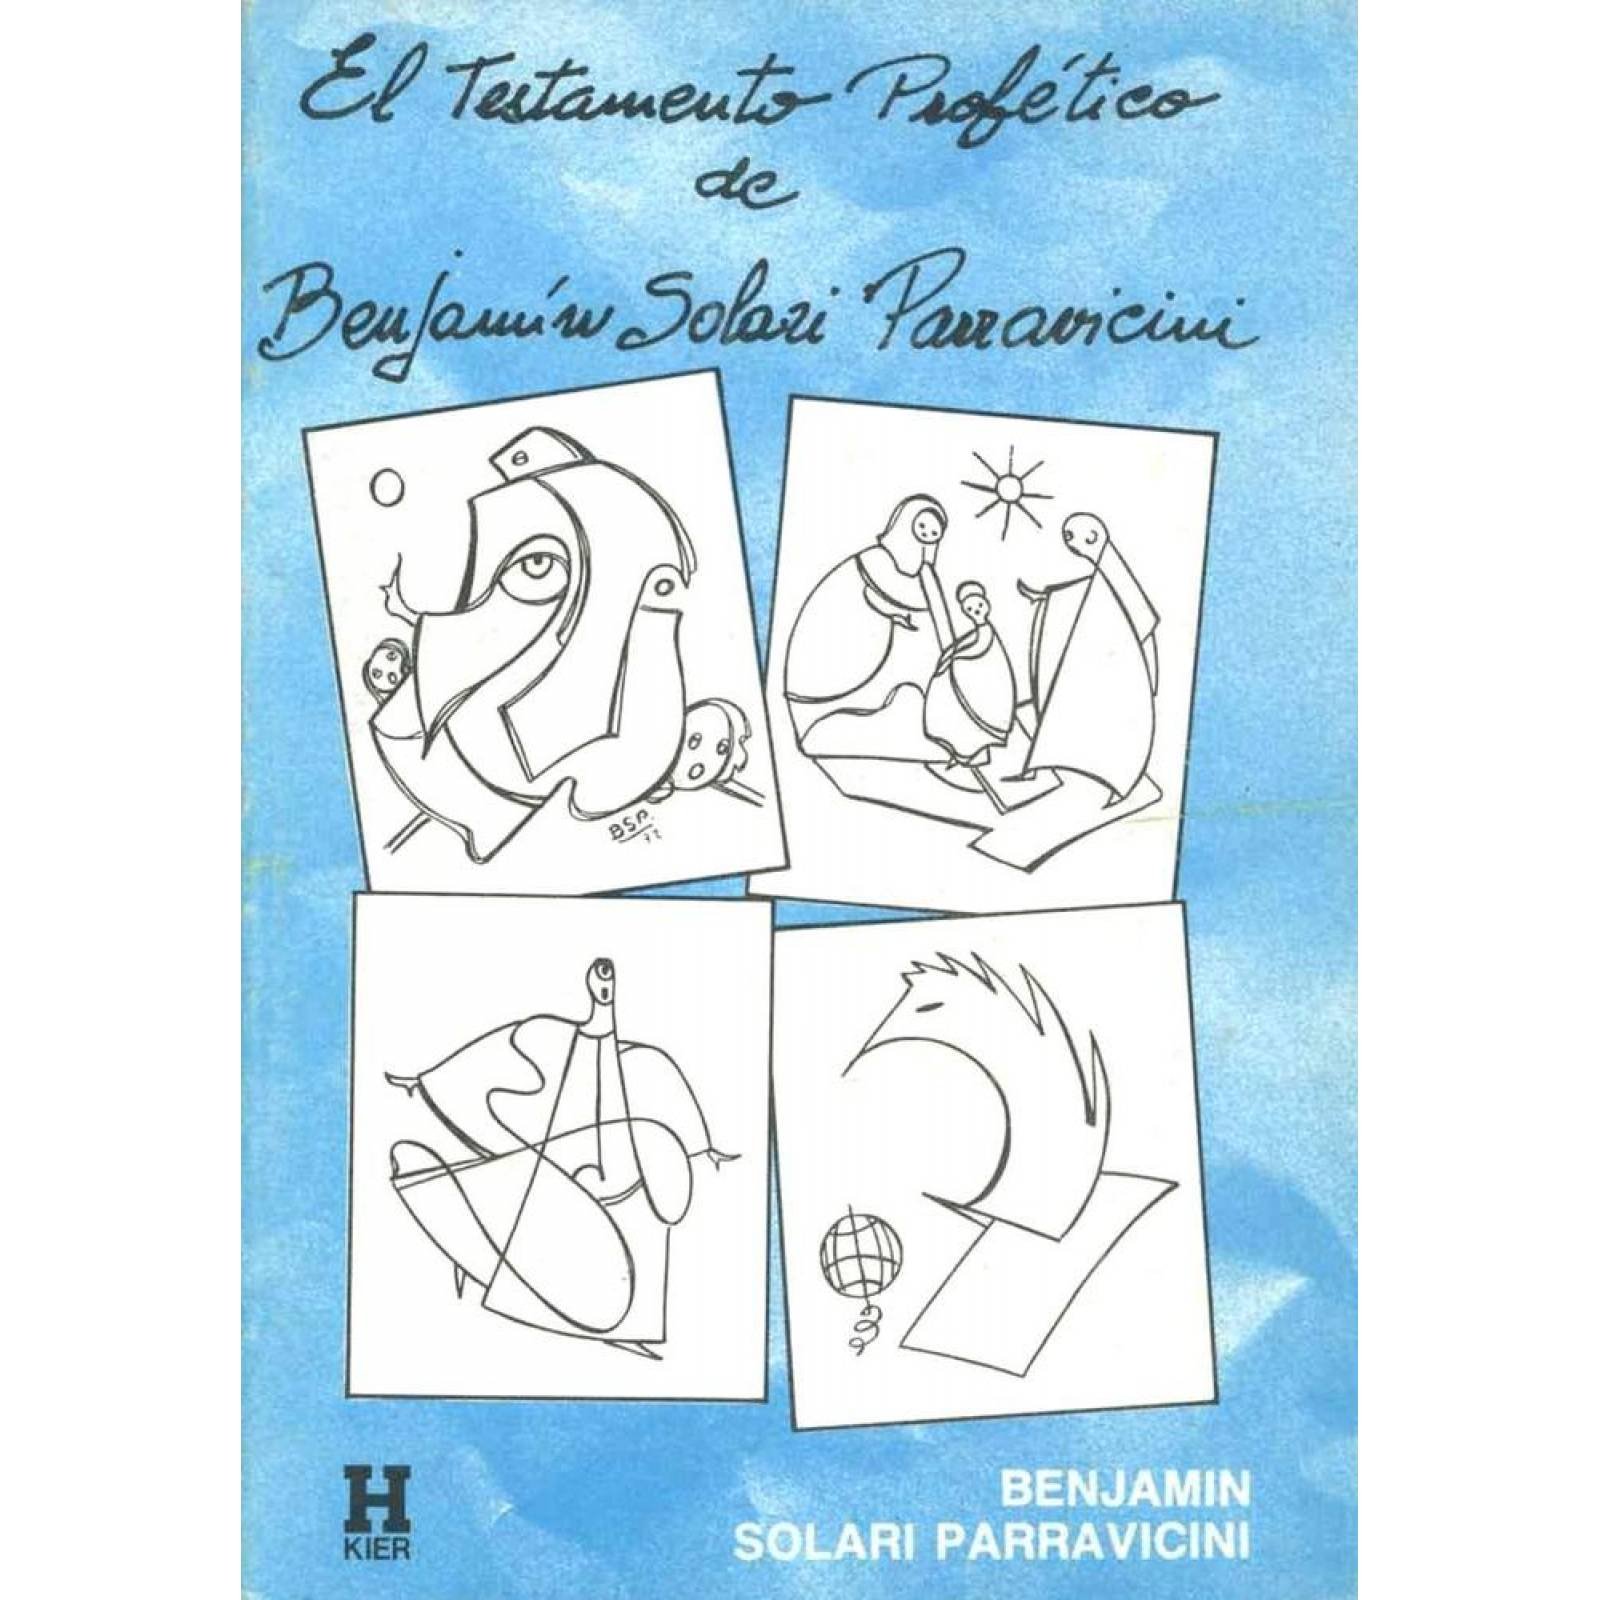 El testamento profético de Benjamín Solari Parravicini 